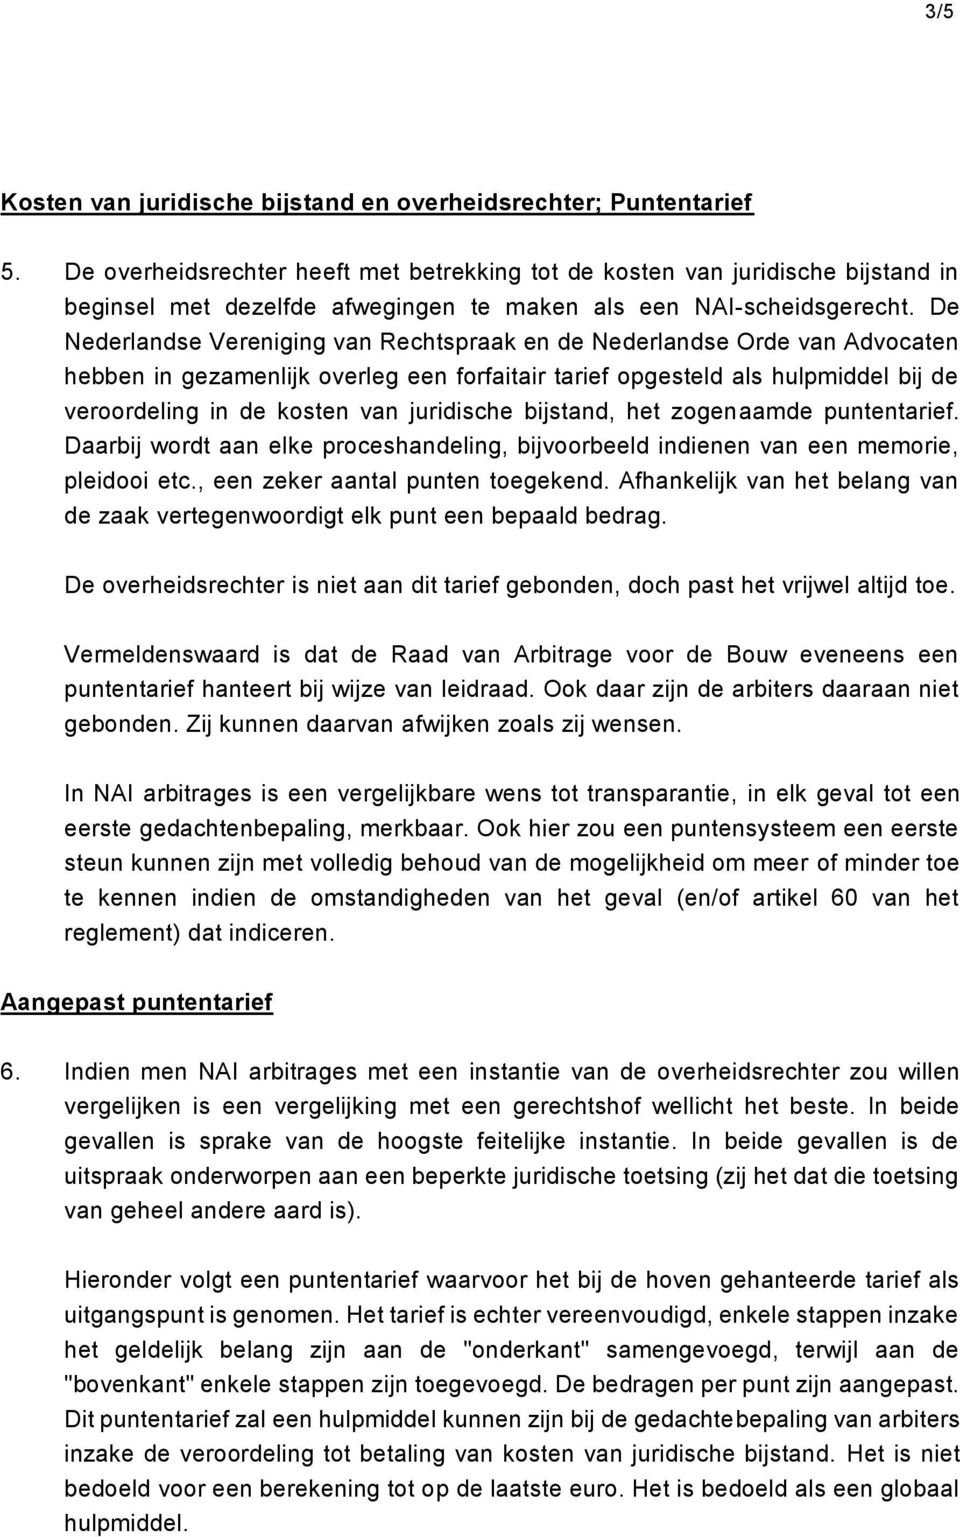 De Nederlandse Vereniging van Rechtspraak en de Nederlandse Orde van Advocaten hebben in gezamenlijk overleg een forfaitair tarief opgesteld als hulpmiddel bij de veroordeling in de kosten van